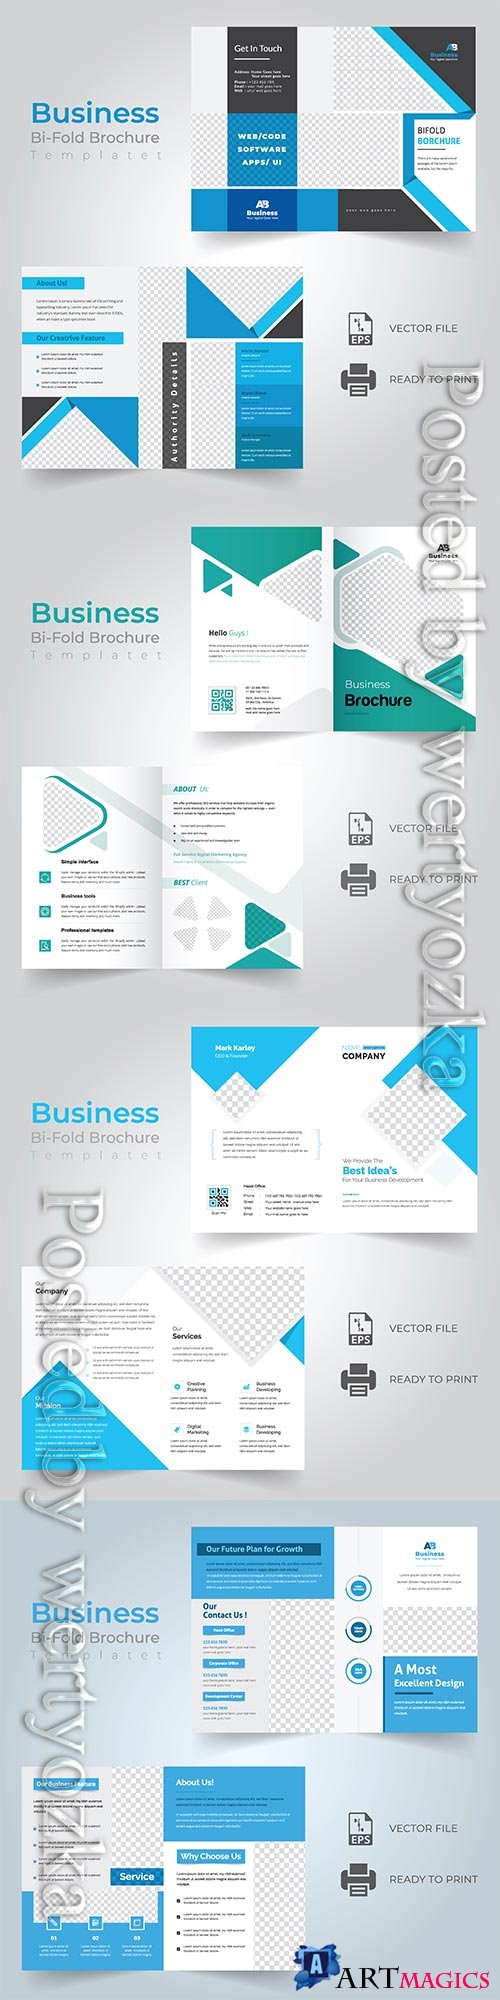 Bi-fold vector brochure template design, corporate business concept